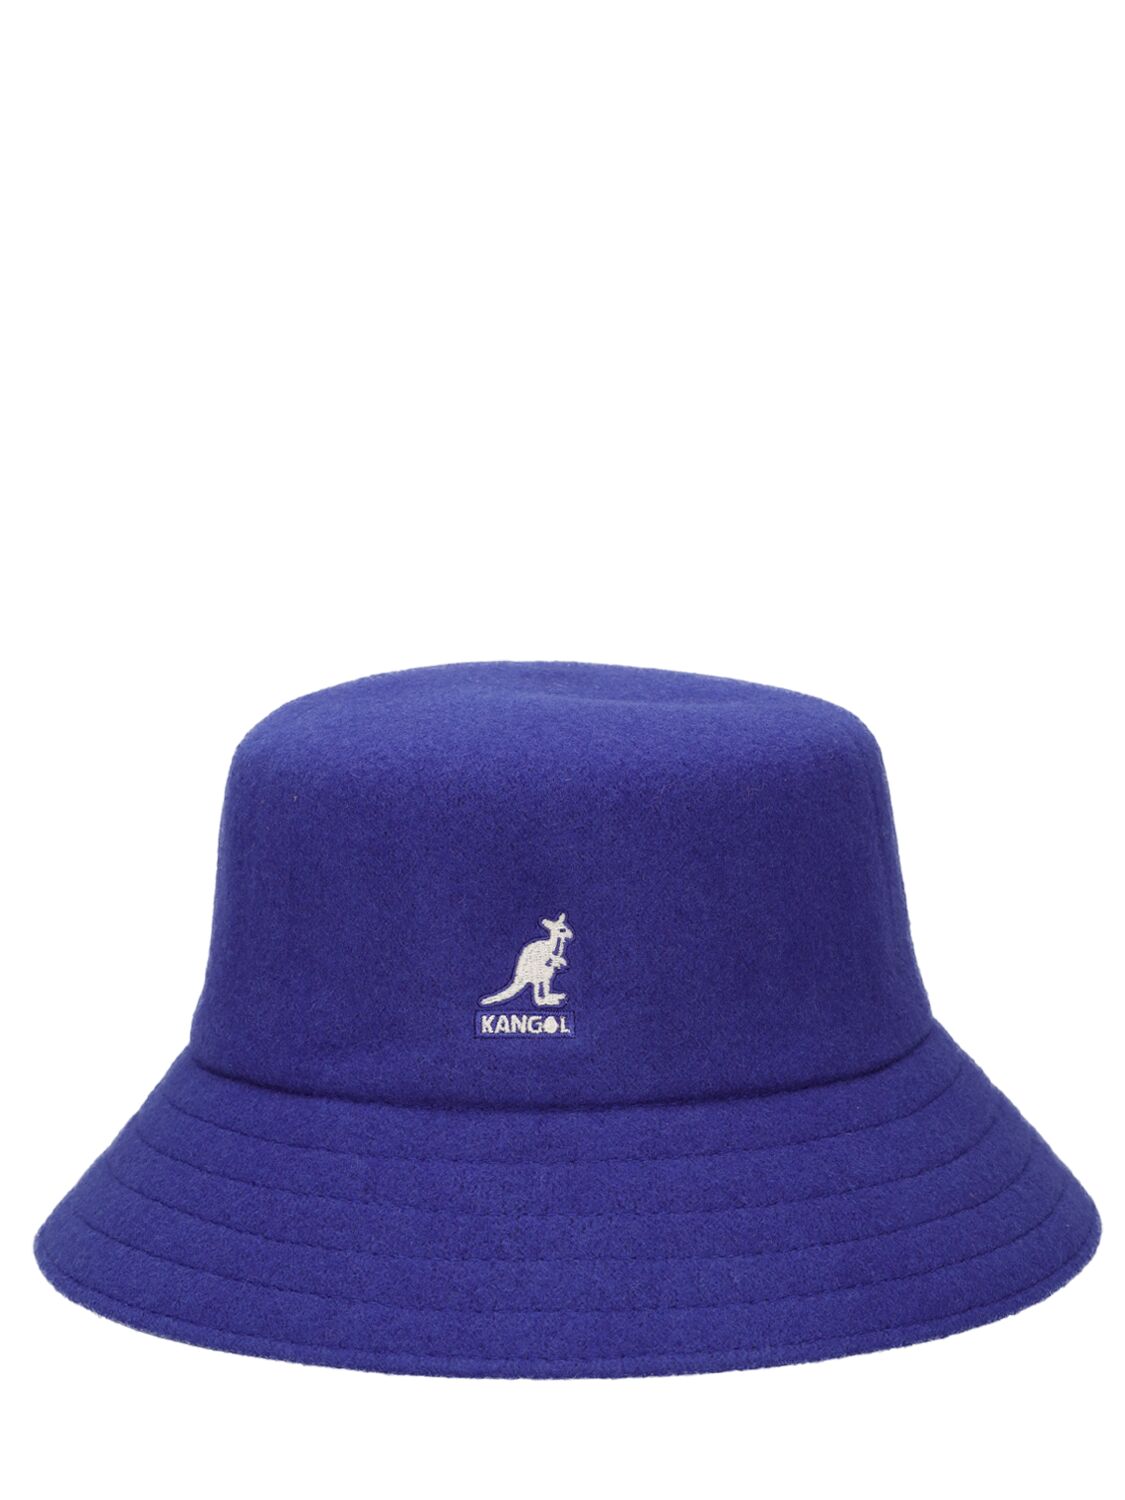 Kangol Lahinch Wool Blend Bucket Hat In Blue